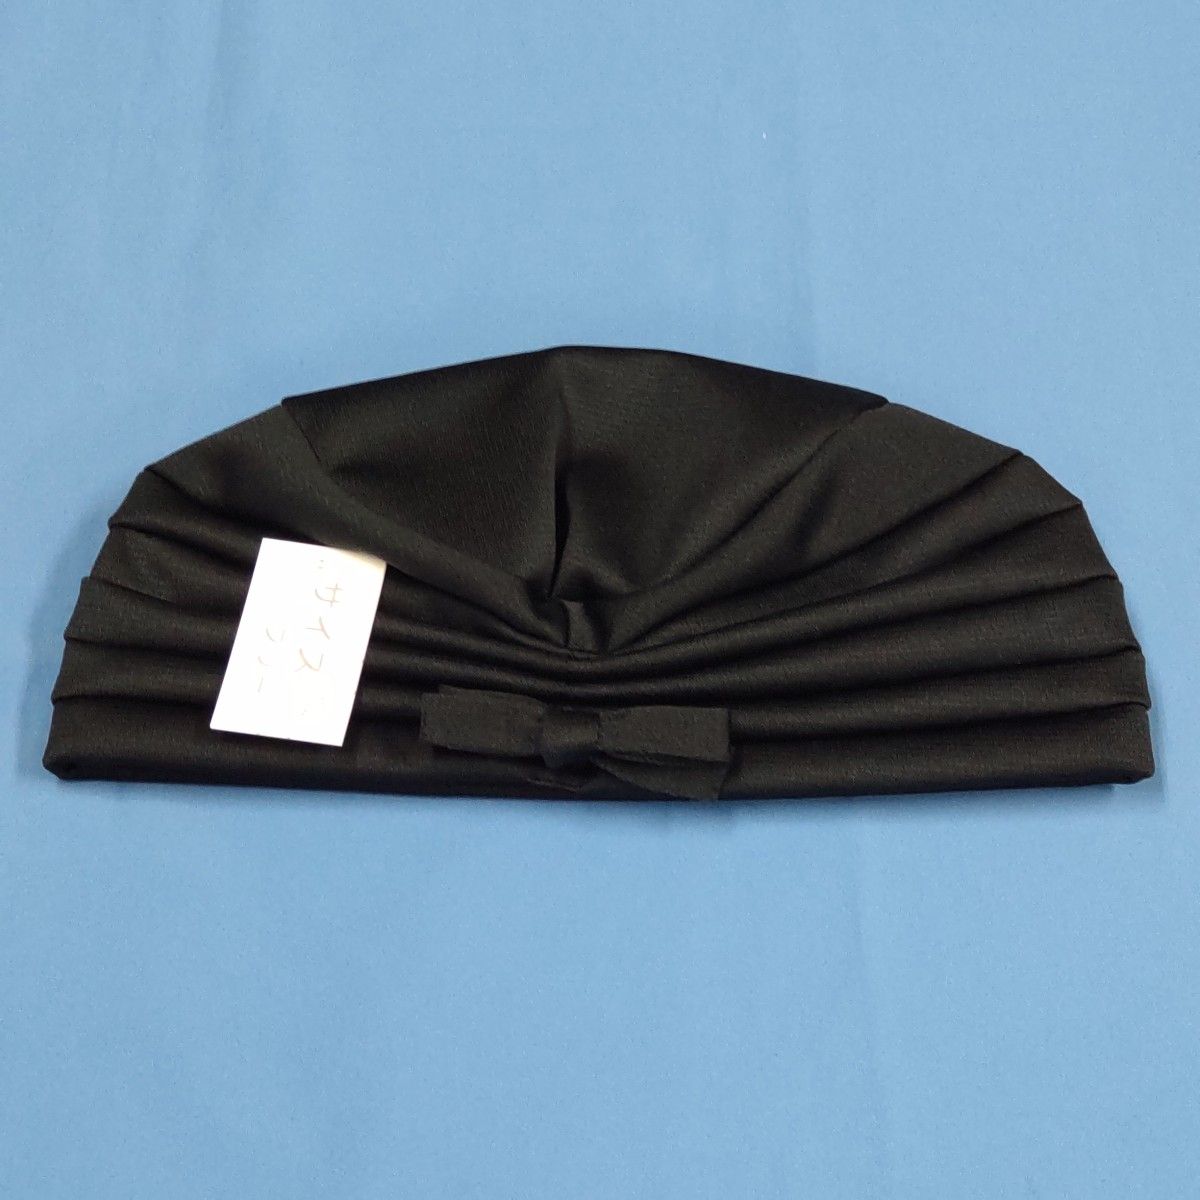 レディース帽子 ターバン帽子 (黒色)  ☆サイズ調整可能  軽量  日本製